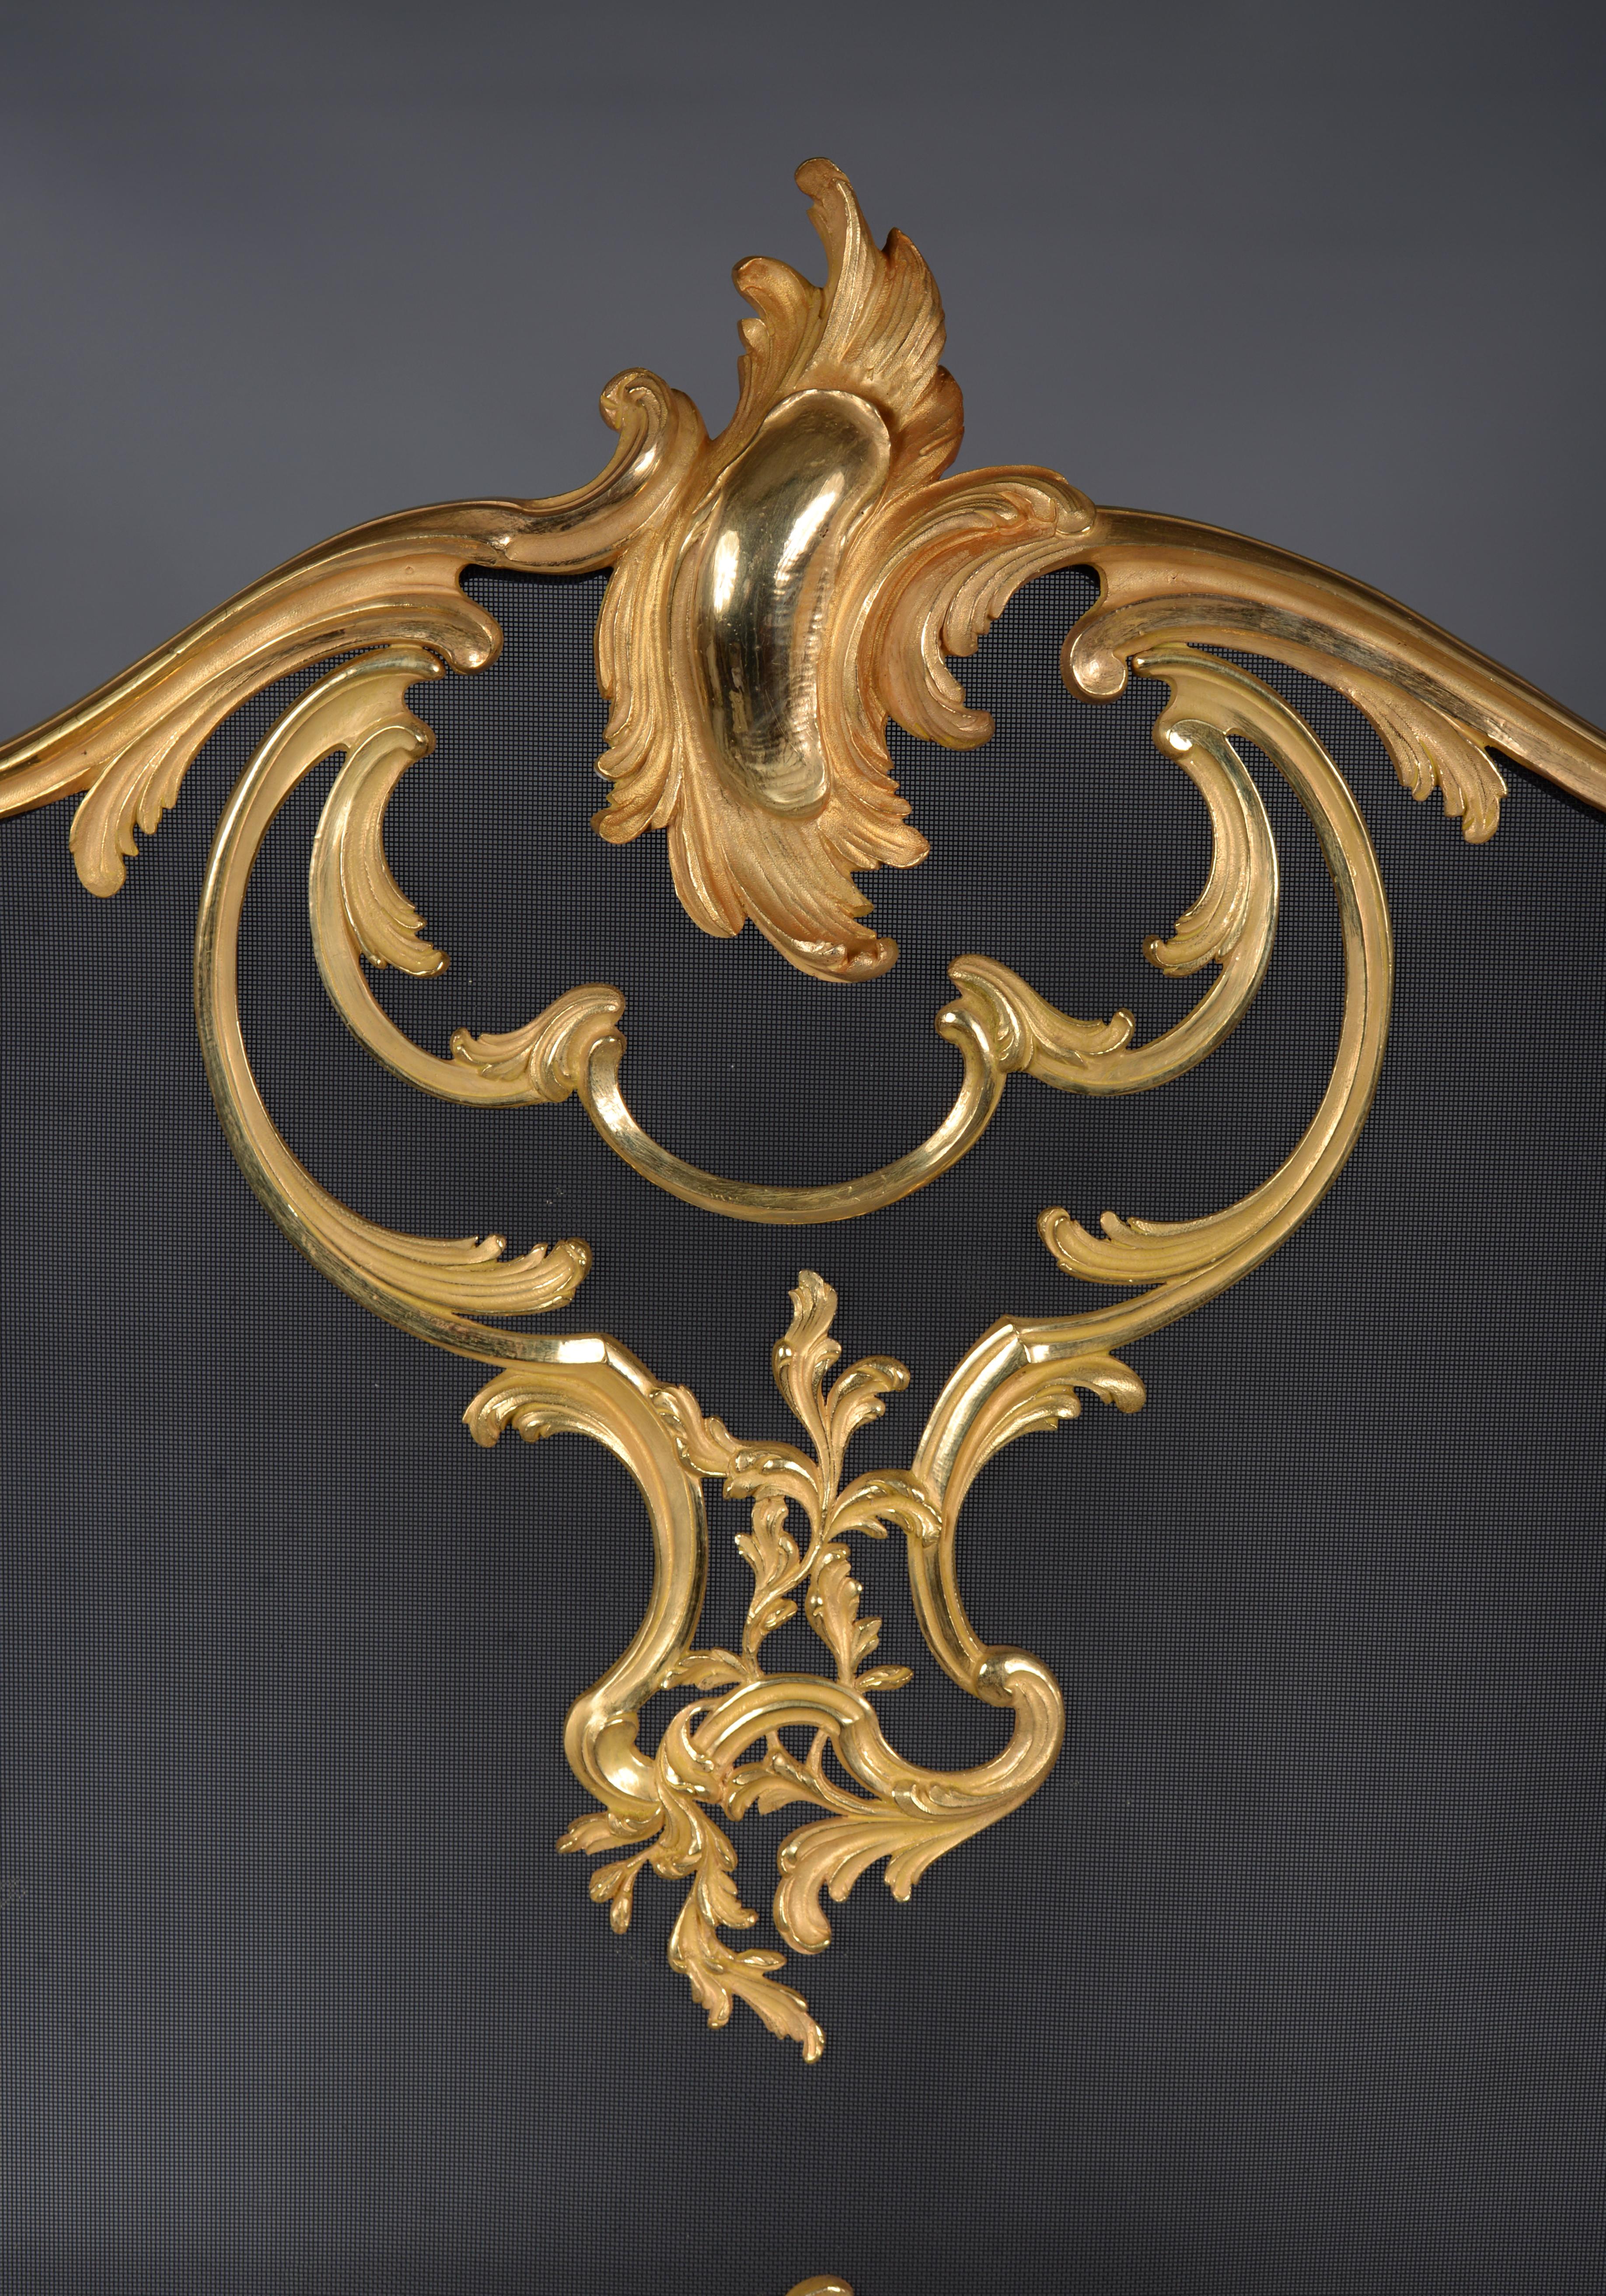 Ce bel écran de cheminée en bronze doré est une réédition d'un modèle présenté à l'Exposition universelle de 1900 par le grand spécialiste des accessoires de cheminée, Bouhon Frères. Reprenant les lignes courbes du style Louis XV, notre pare-feu est